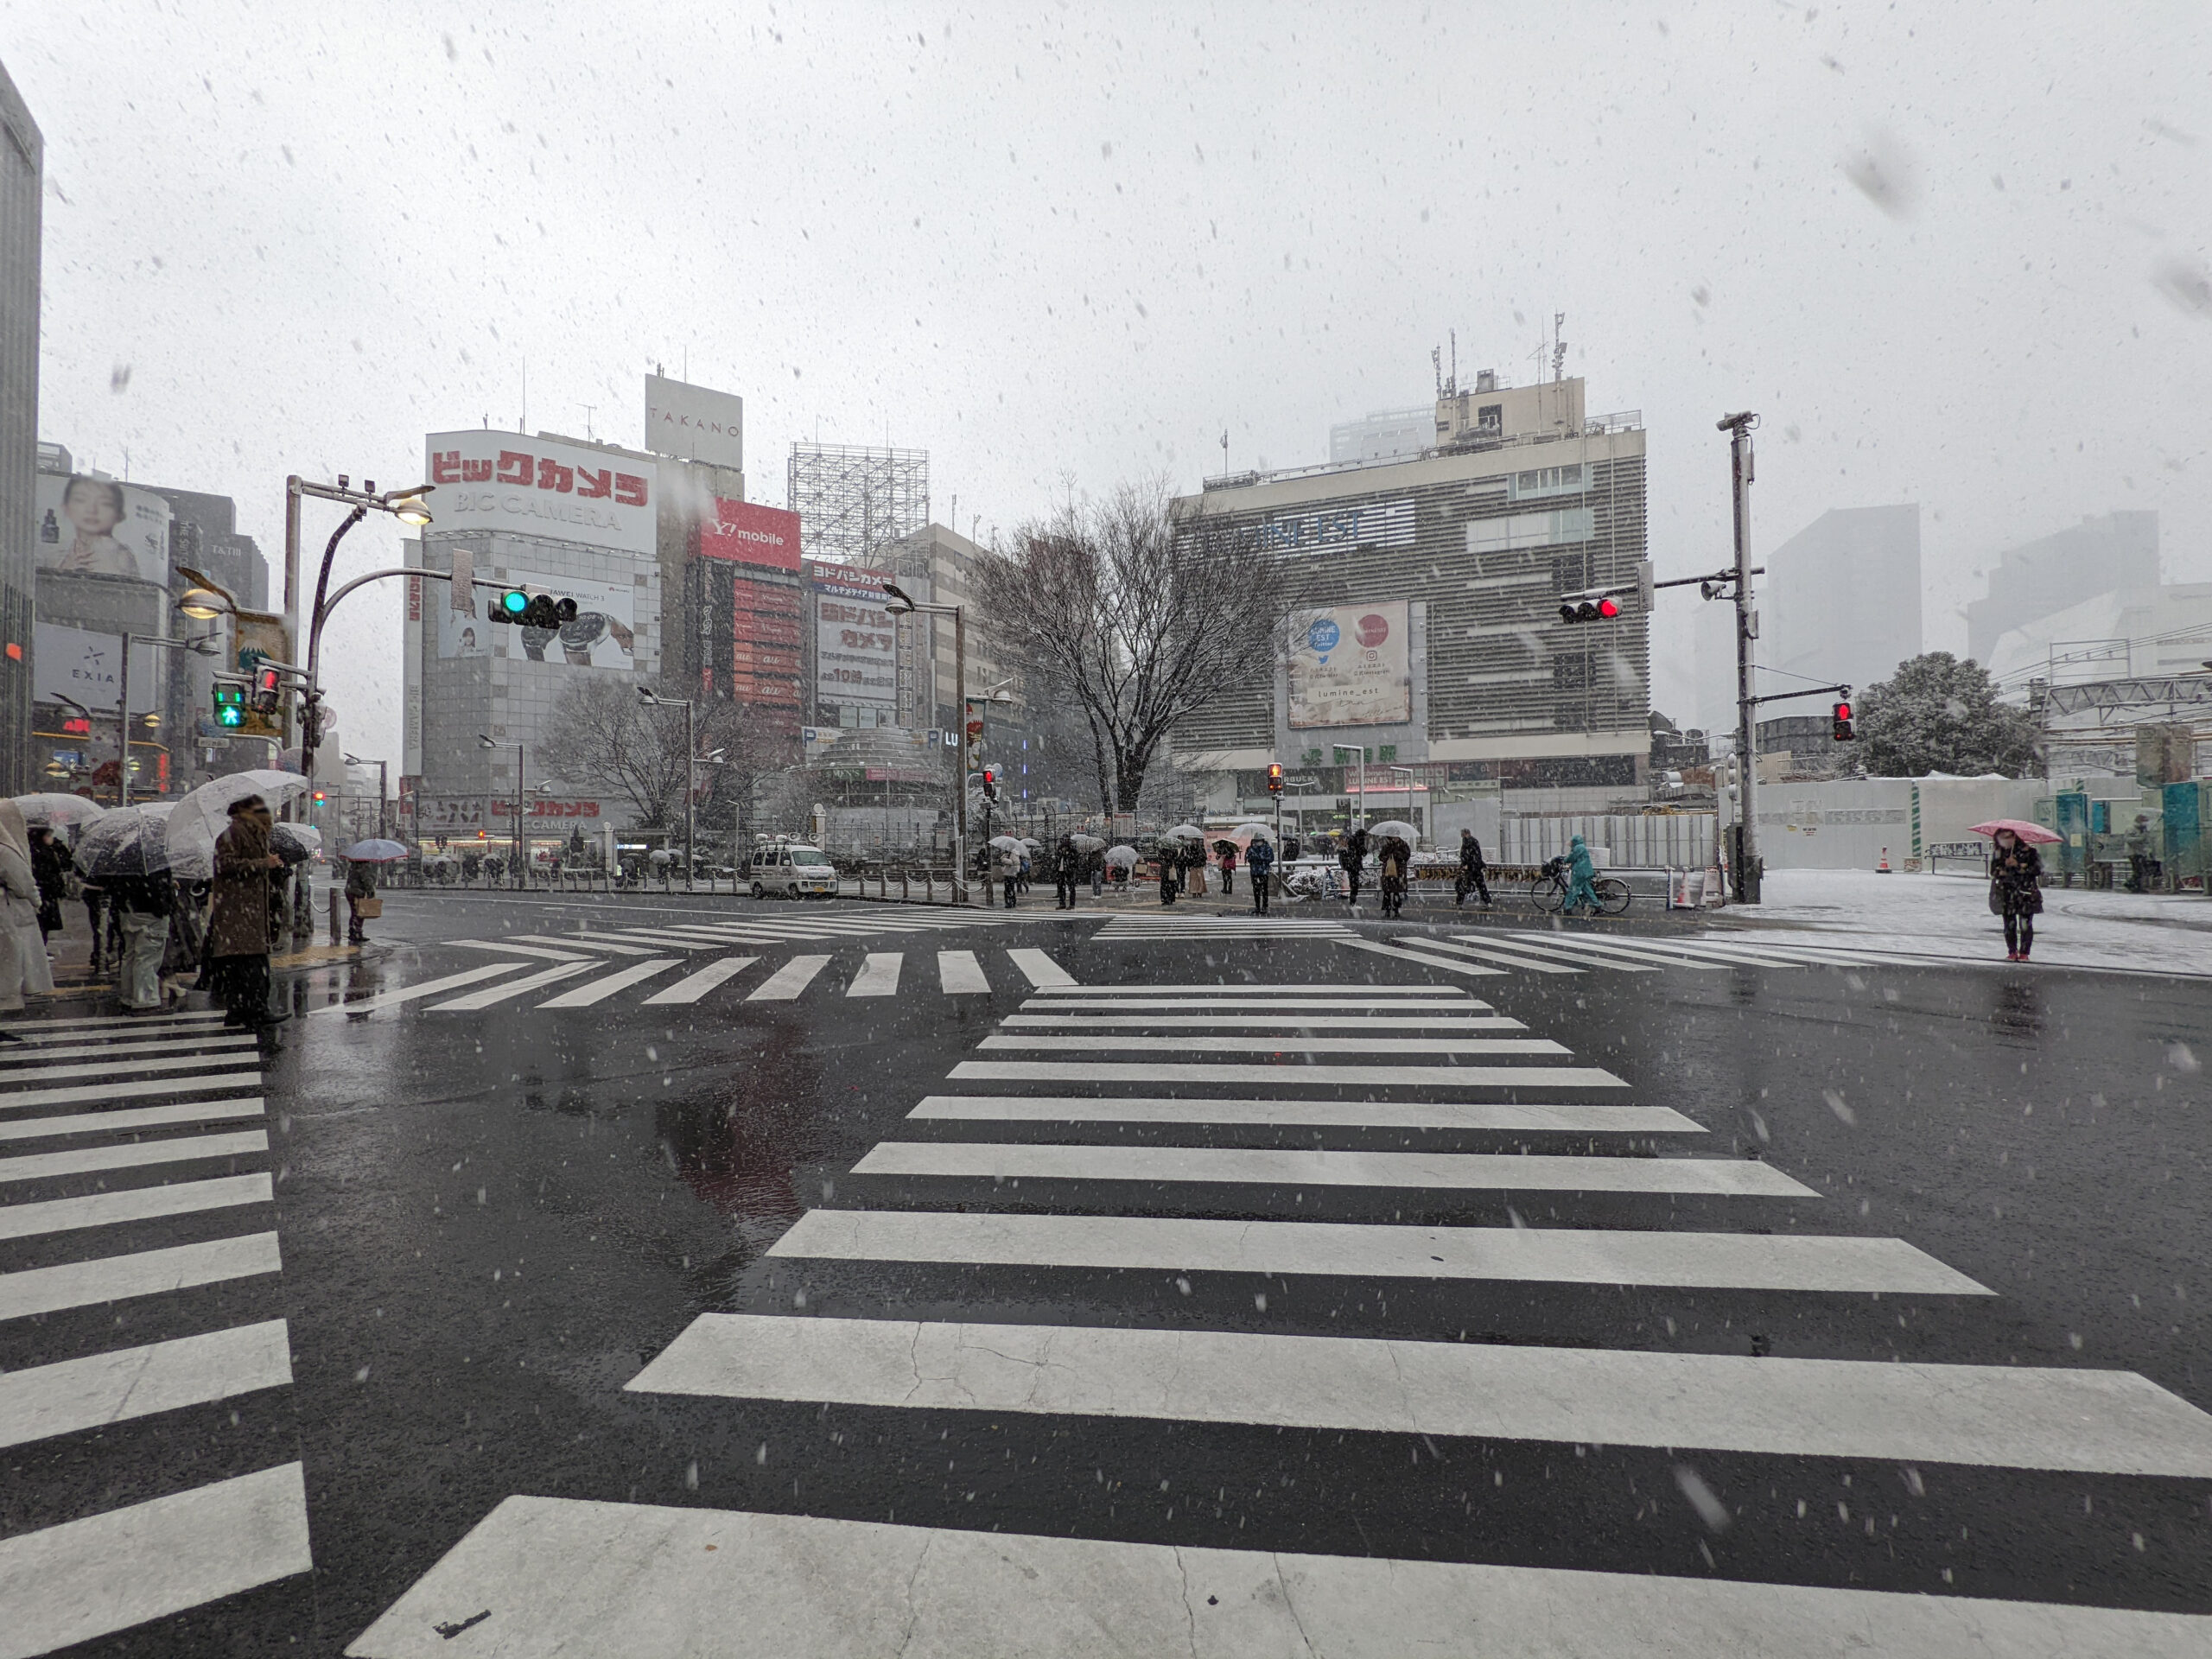 雪の日の新宿 東口アルタ前の交差点 2枚目